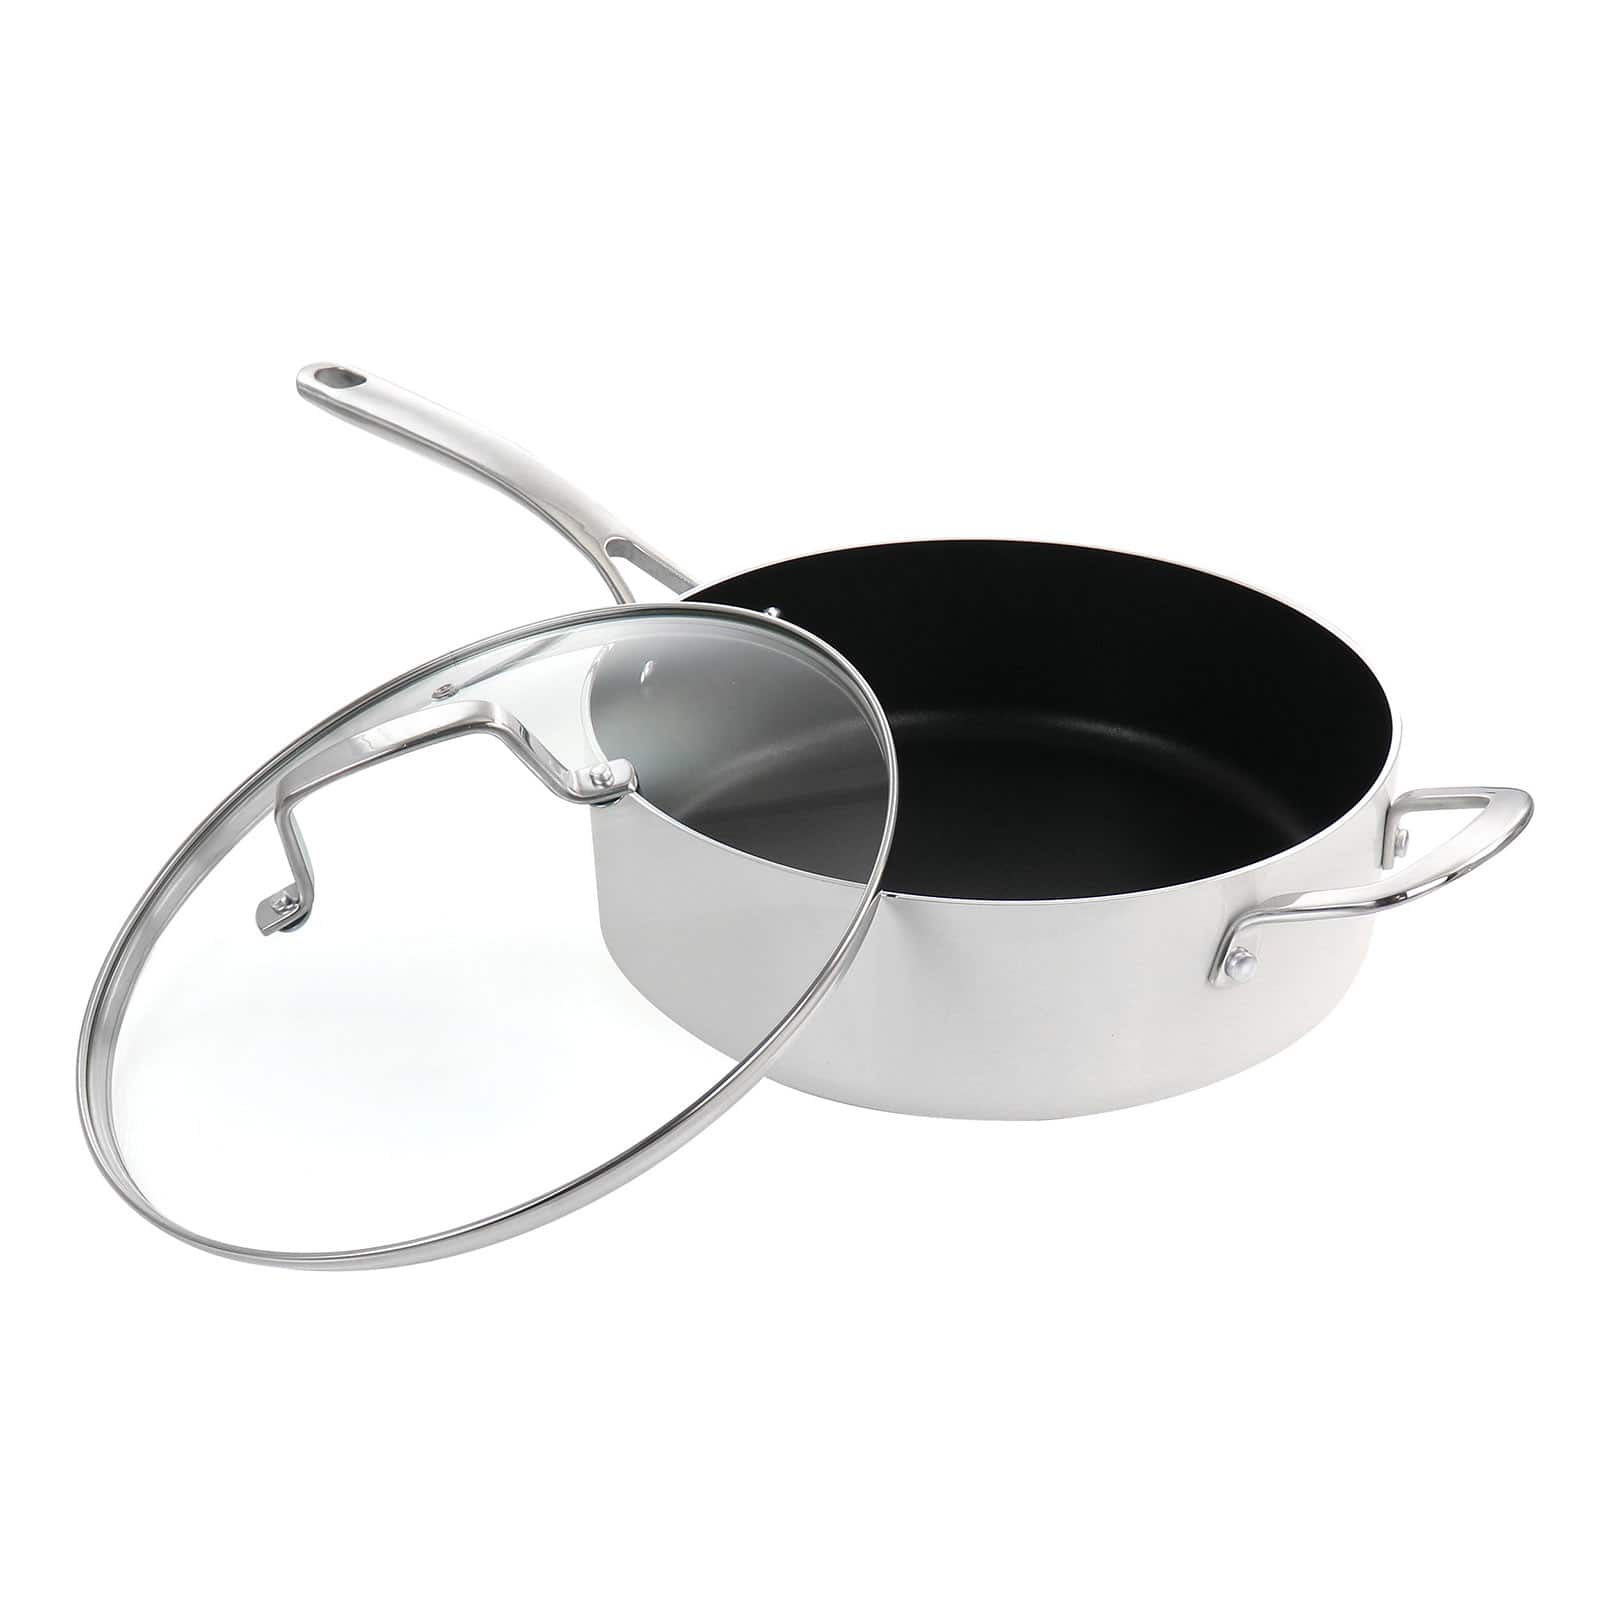 Martha Stewart 10 - PieceAluminum Nonstick Cookware Set & Reviews